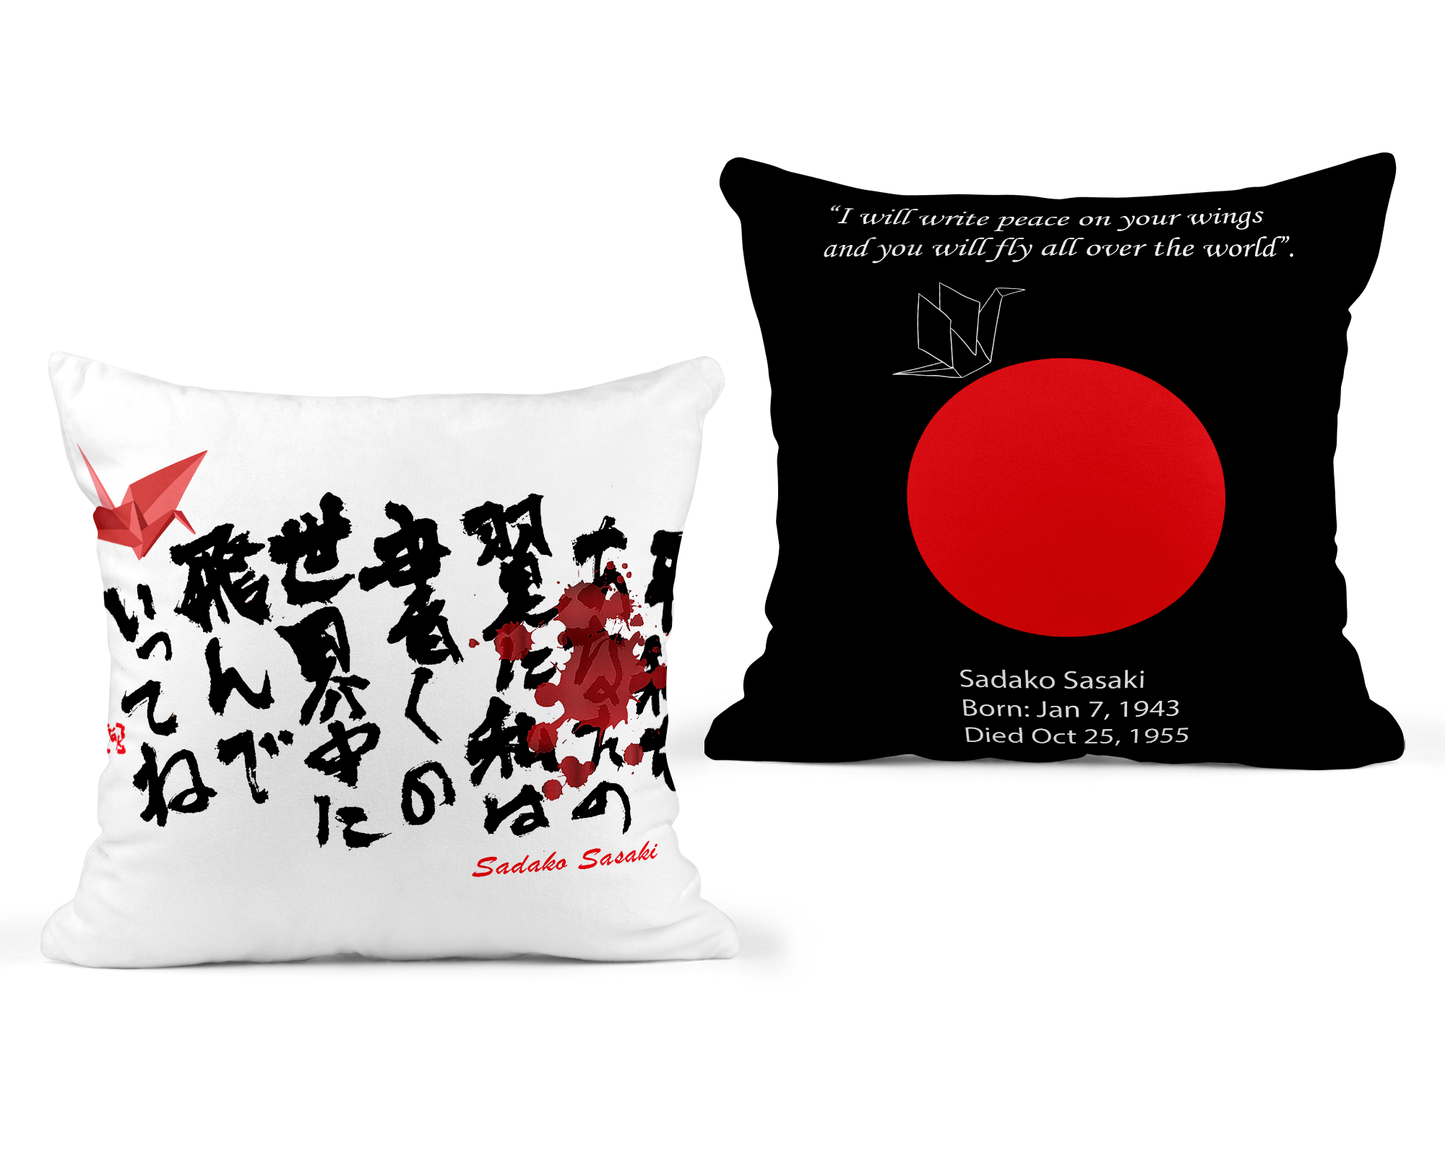 Sadako Sasaki Pillow Cover - Black Back - 18x18